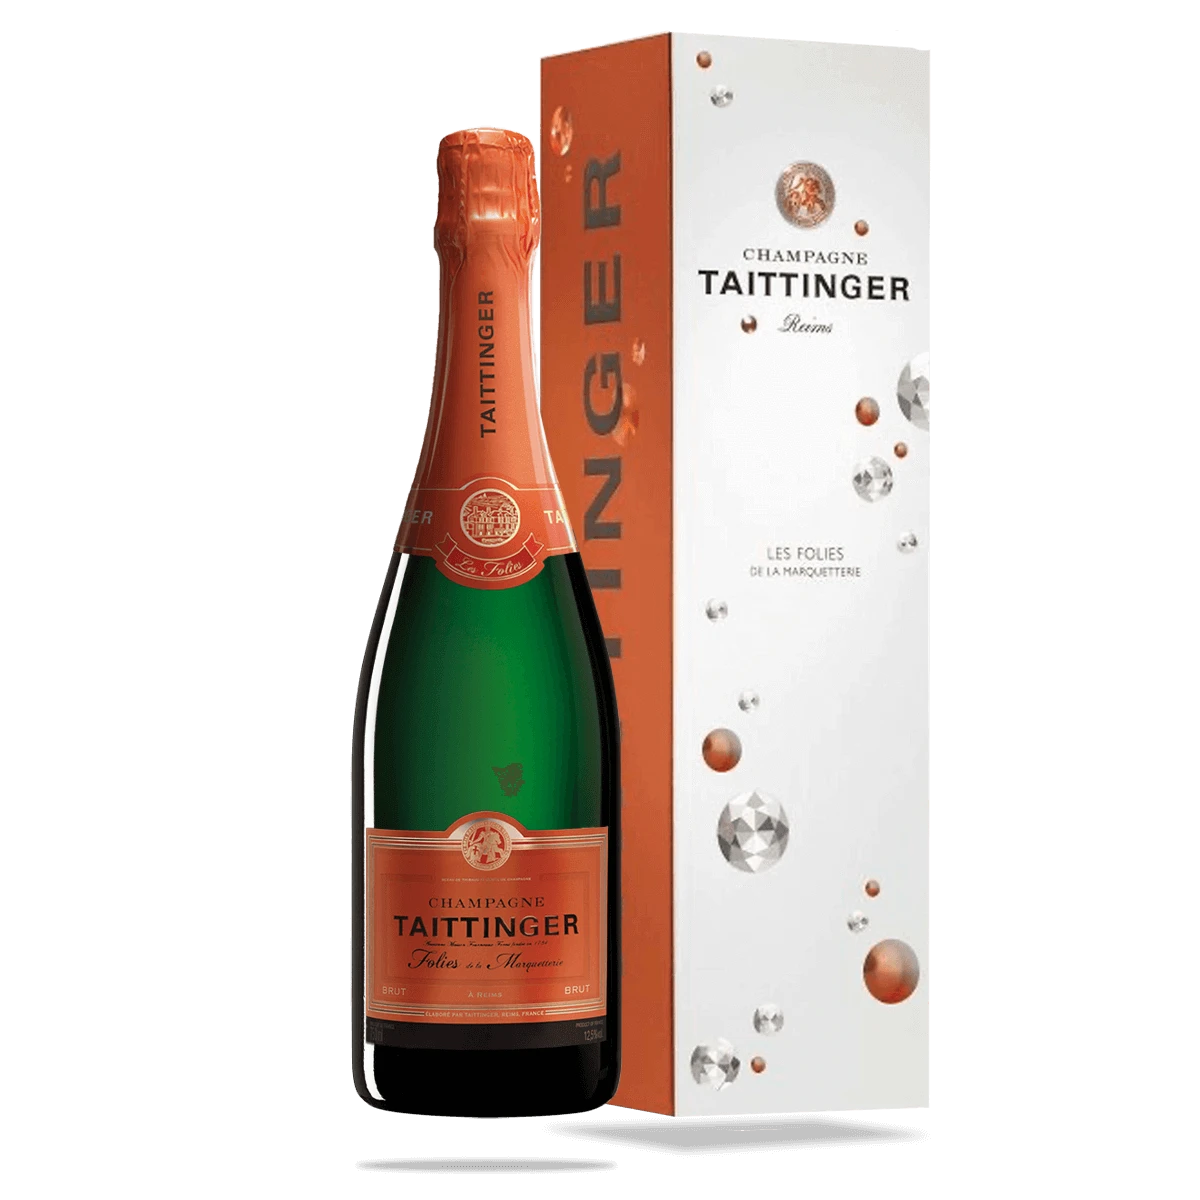 Champagne Taittinger - Les Folies de la Marquetterie